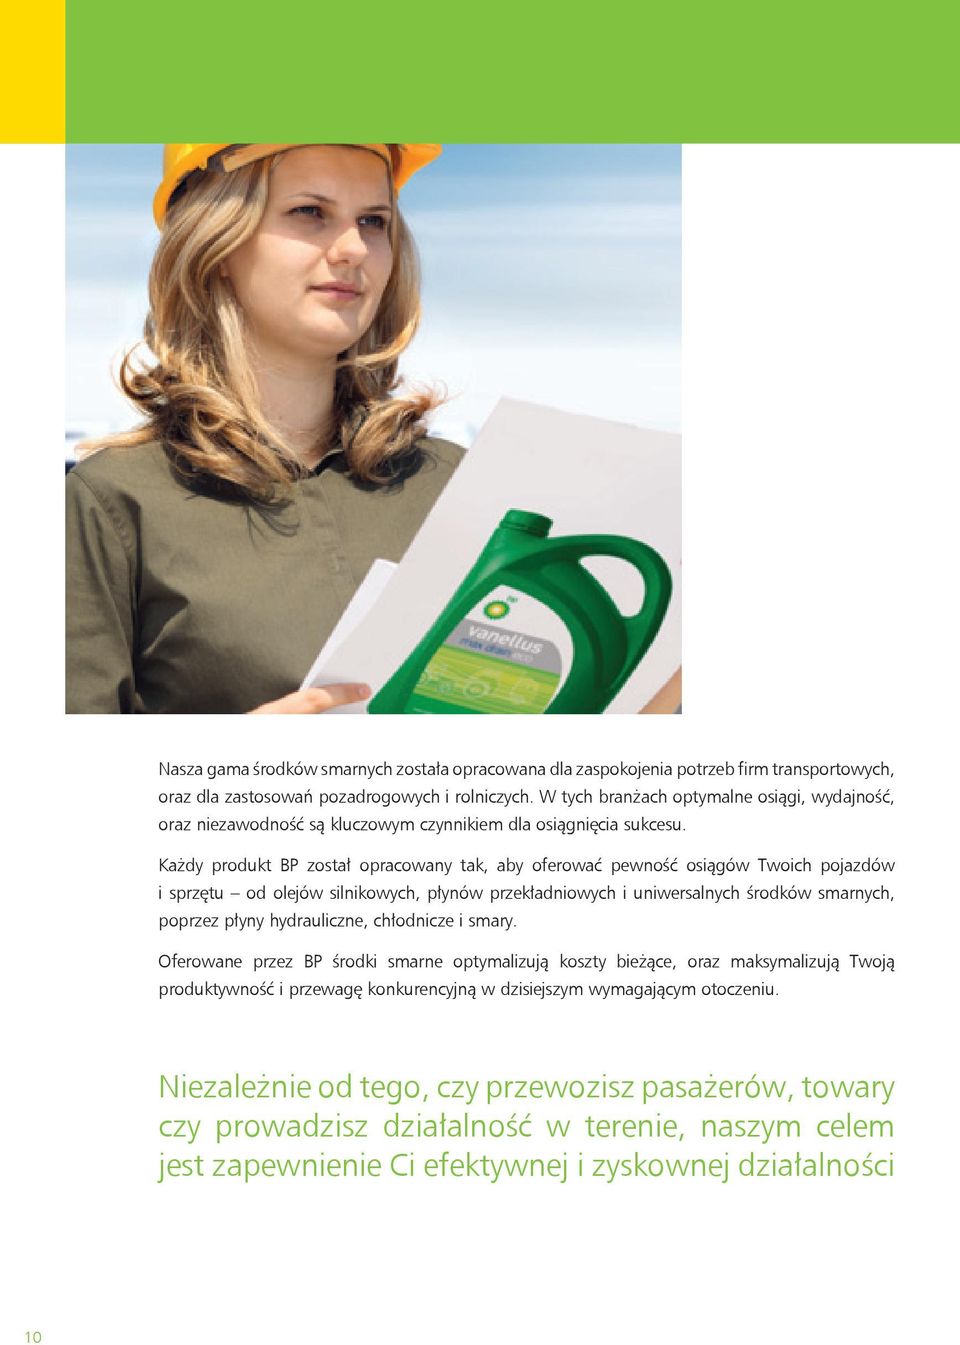 Każdy produkt BP został opracowany tak, aby oferować pewność osiągów Twoich pojazdów i sprzętu od olejów silnikowych, płynów przekładniowych i uniwersalnych środków smarnych, poprzez płyny